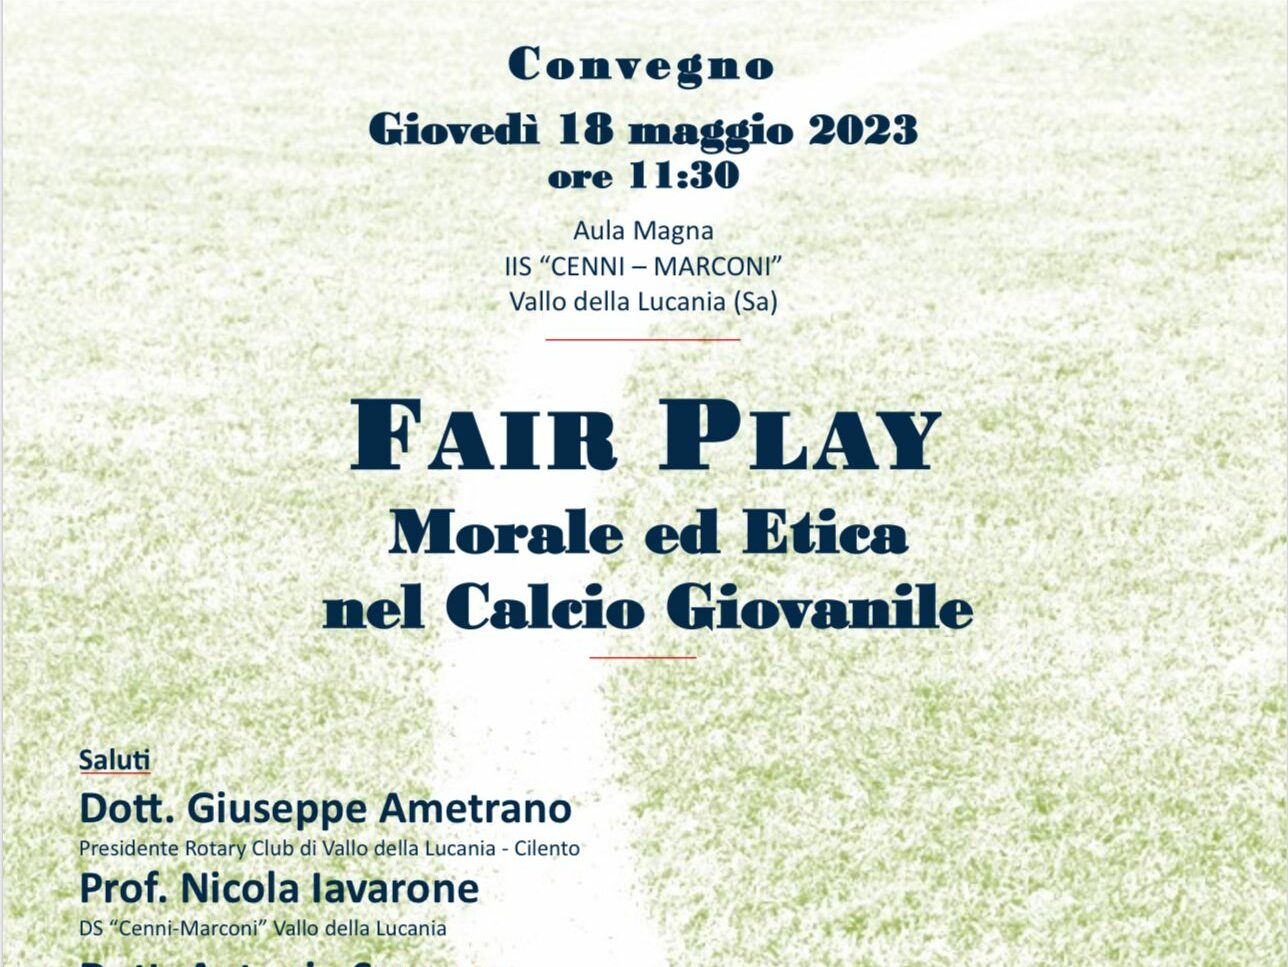 “Fair play, morale ed etica nel calcio giovanile”, a Vallo della Lucania convegno del Rotary con Gabriele Gravina